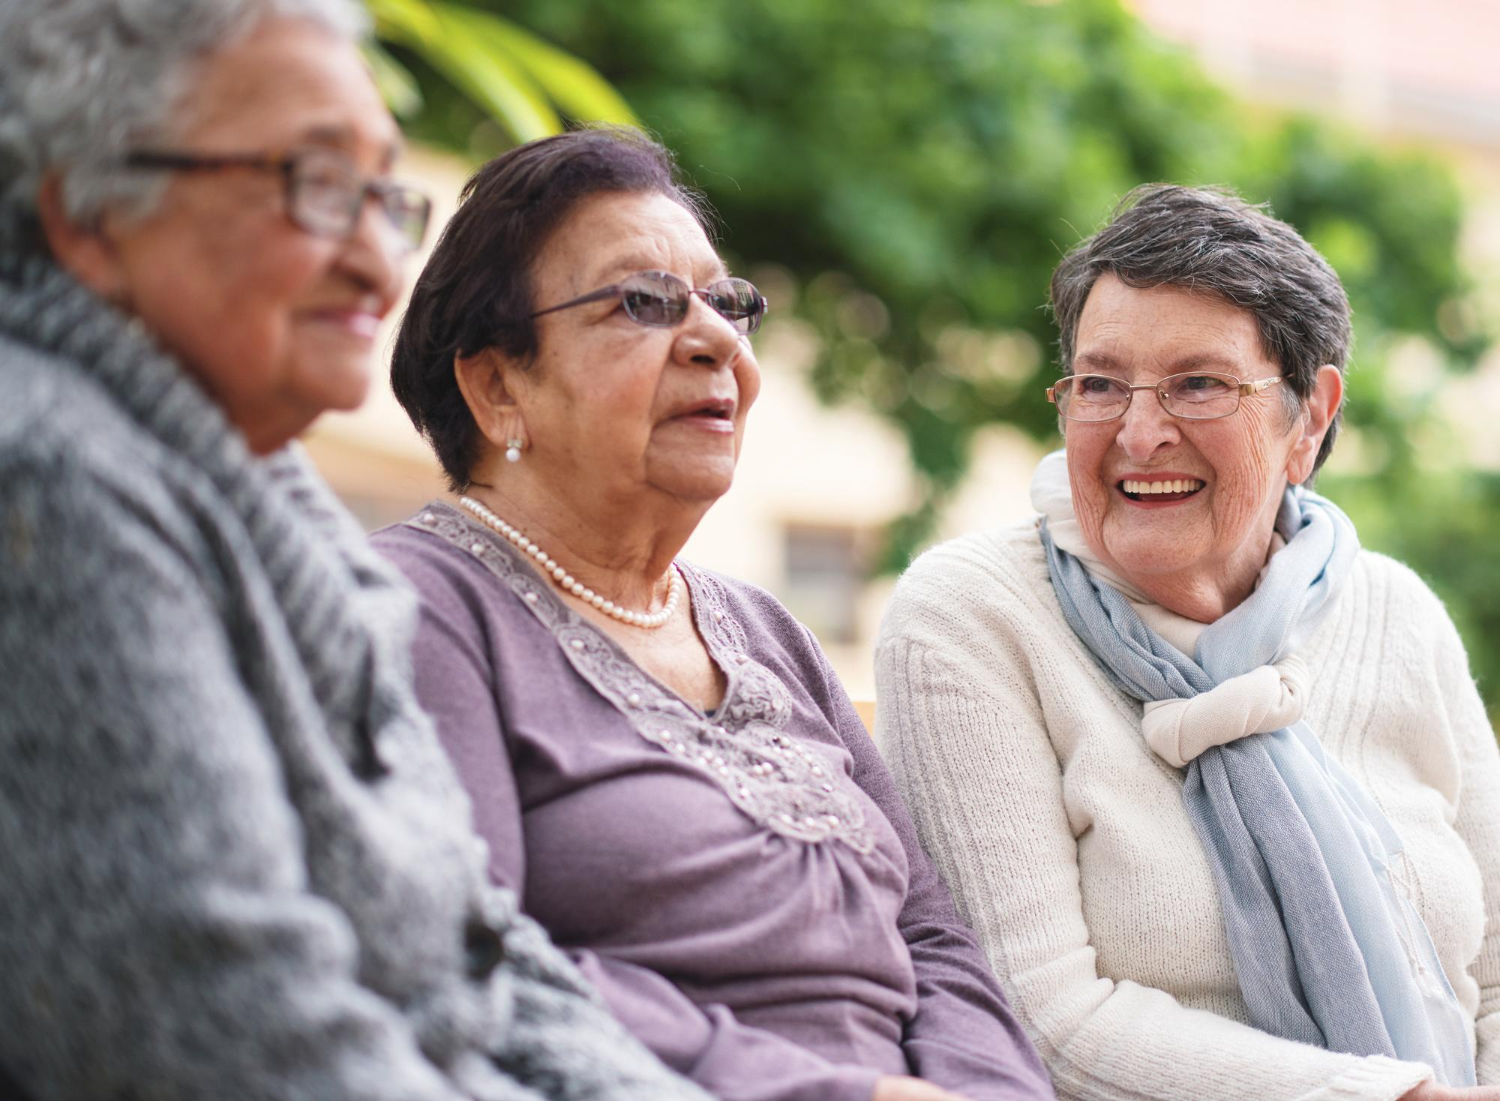 Mulheres idosas felizes sentadas no banco do parque sorrindo e aproveitando a aposentadoria juntas